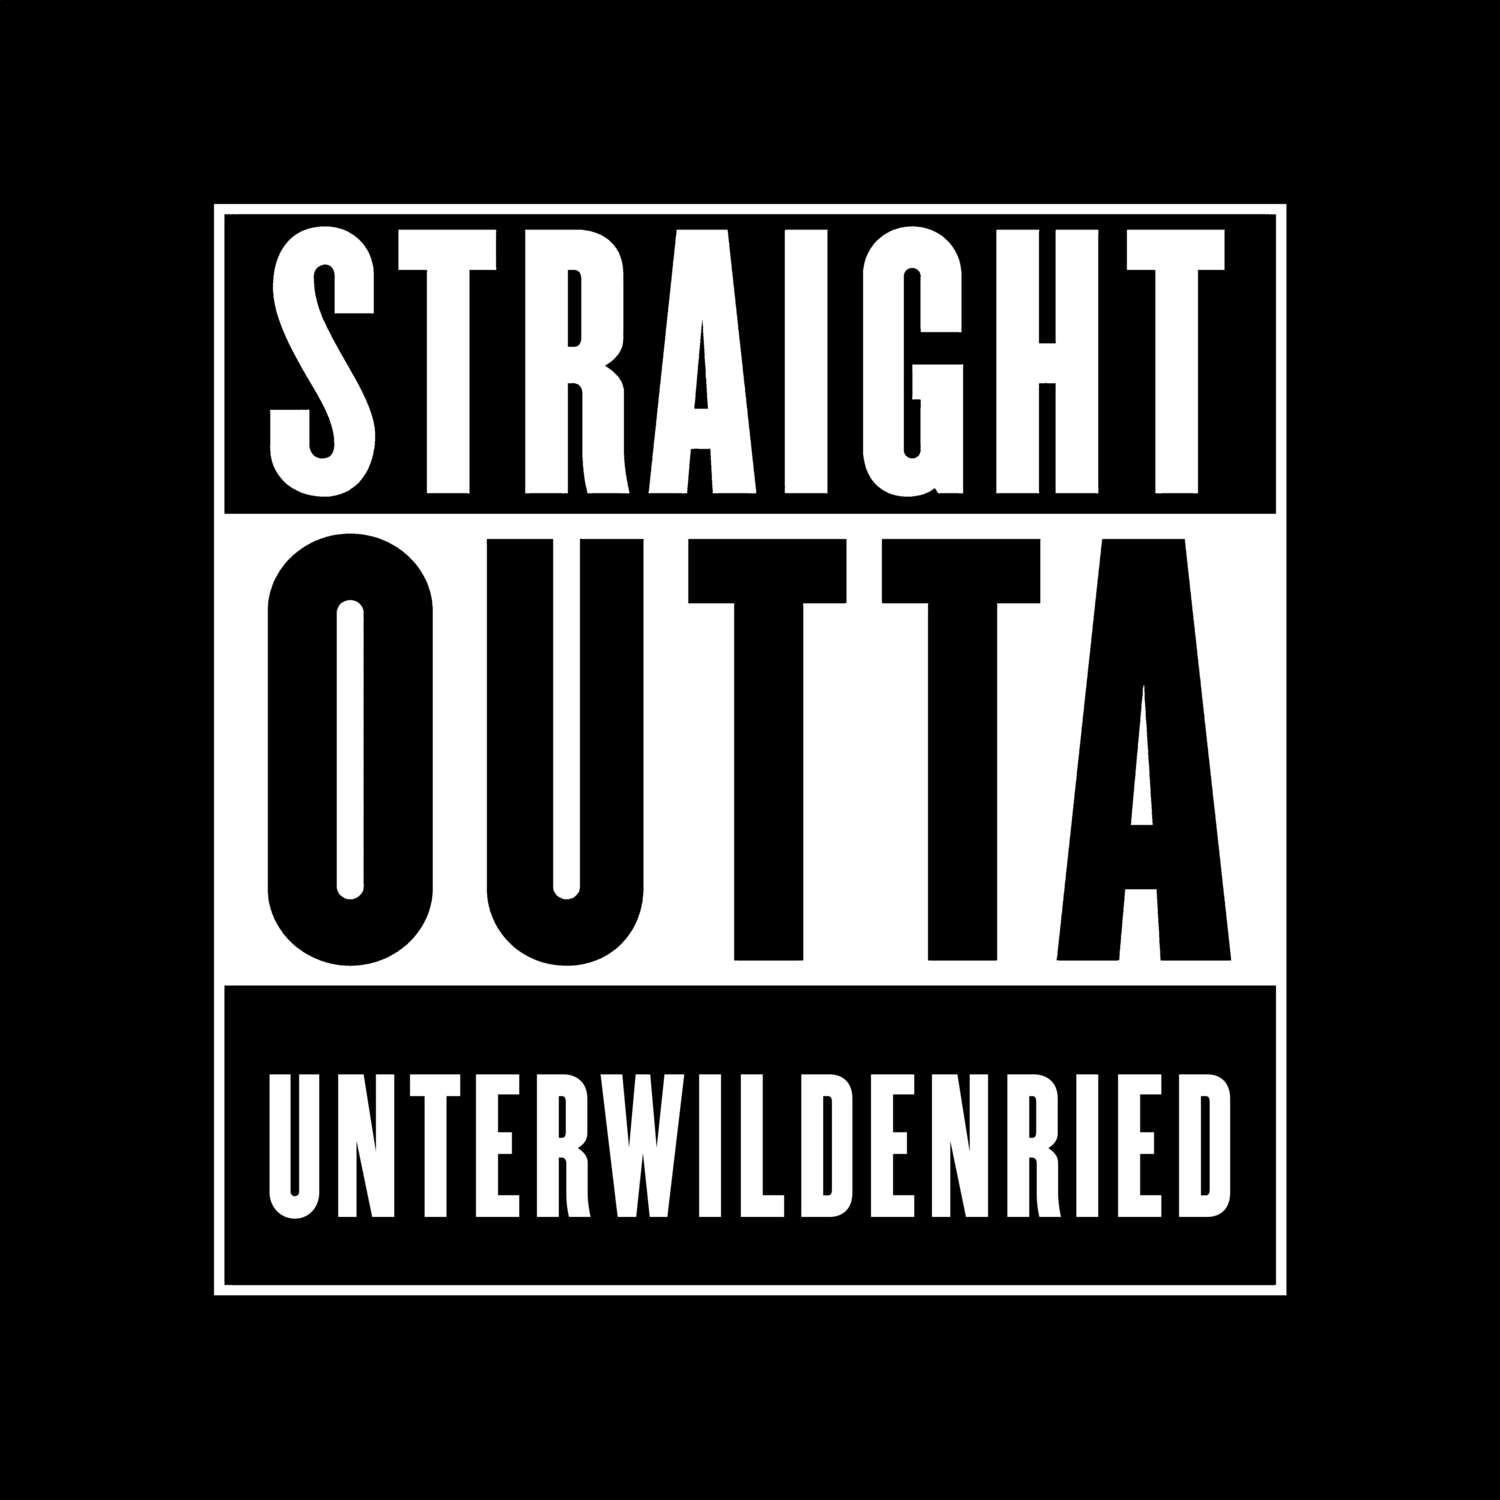 Unterwildenried T-Shirt »Straight Outta«